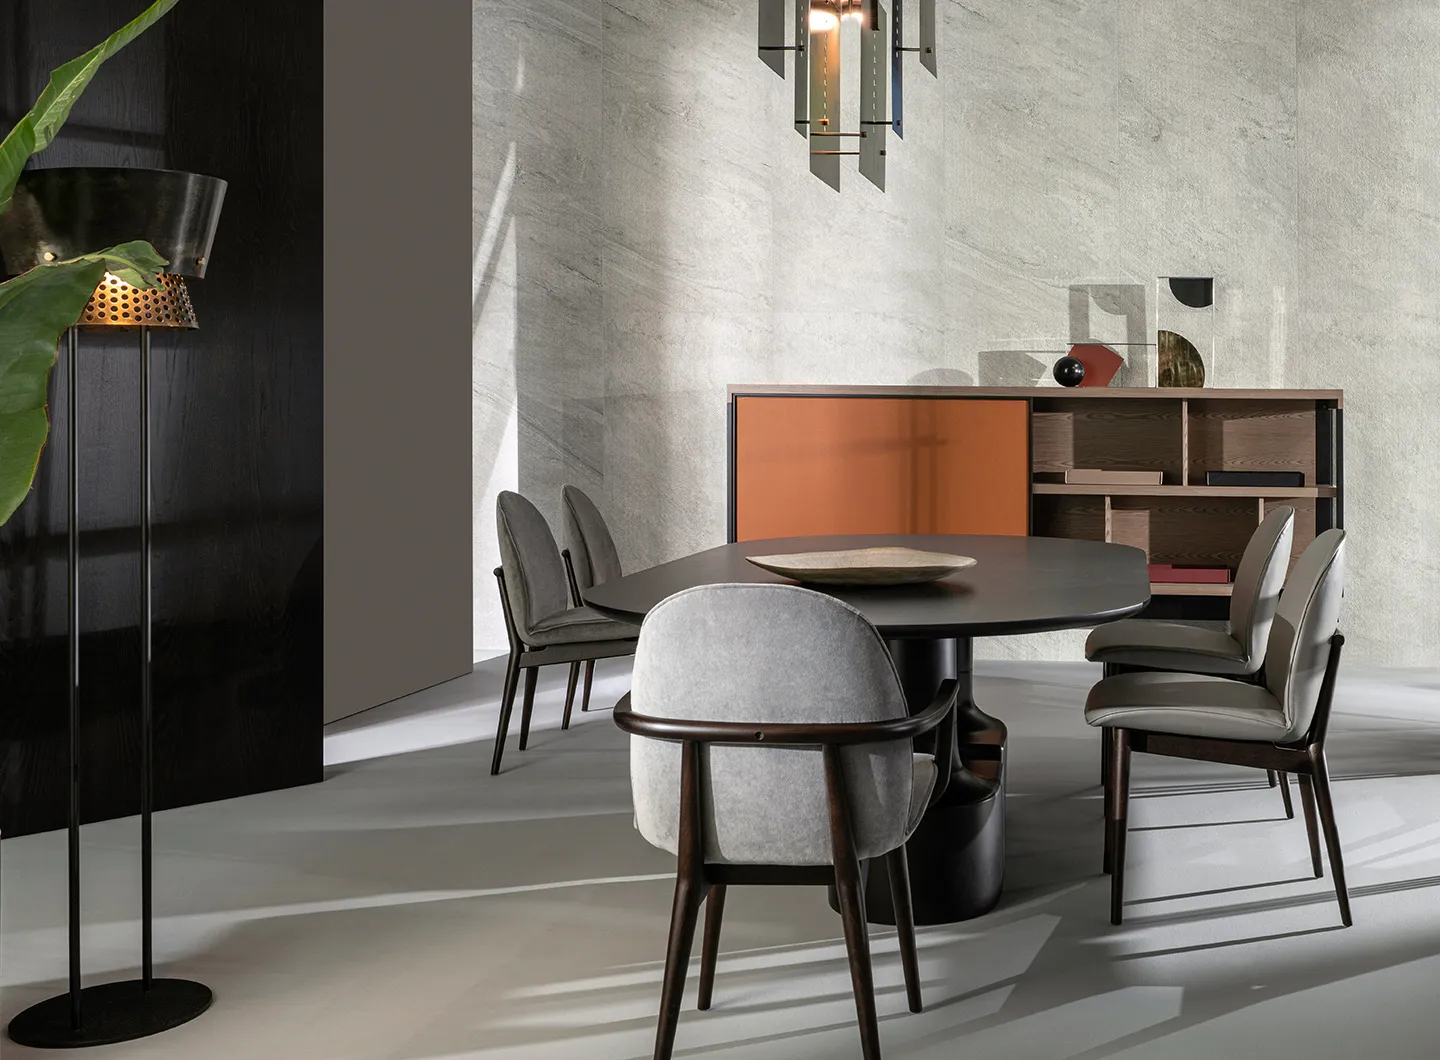 Seliano, Casa International 'Allover 2021' collection designed by Mauro Lipparini